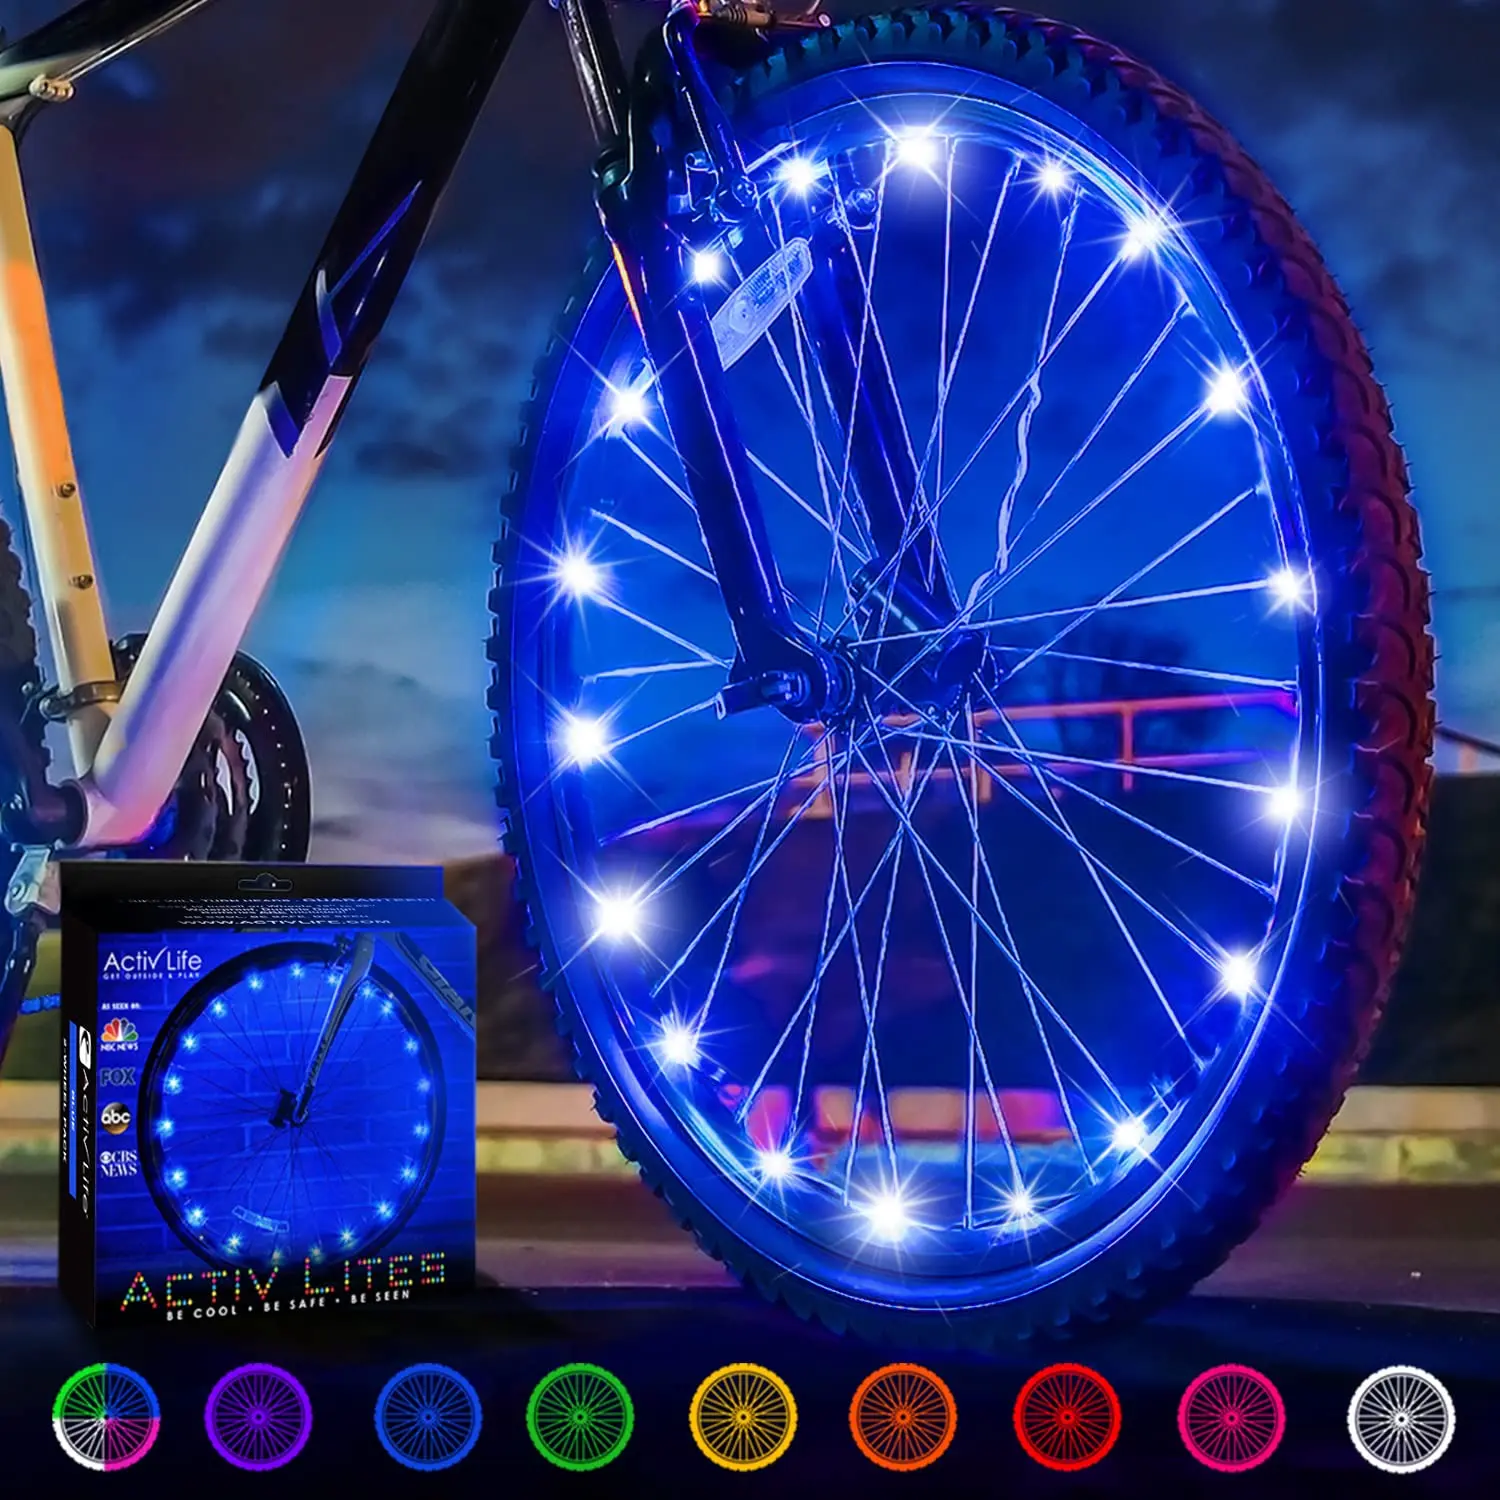 luces para bicicleta sin pilas por energia solar - Qué luces son obligatorias en la bici